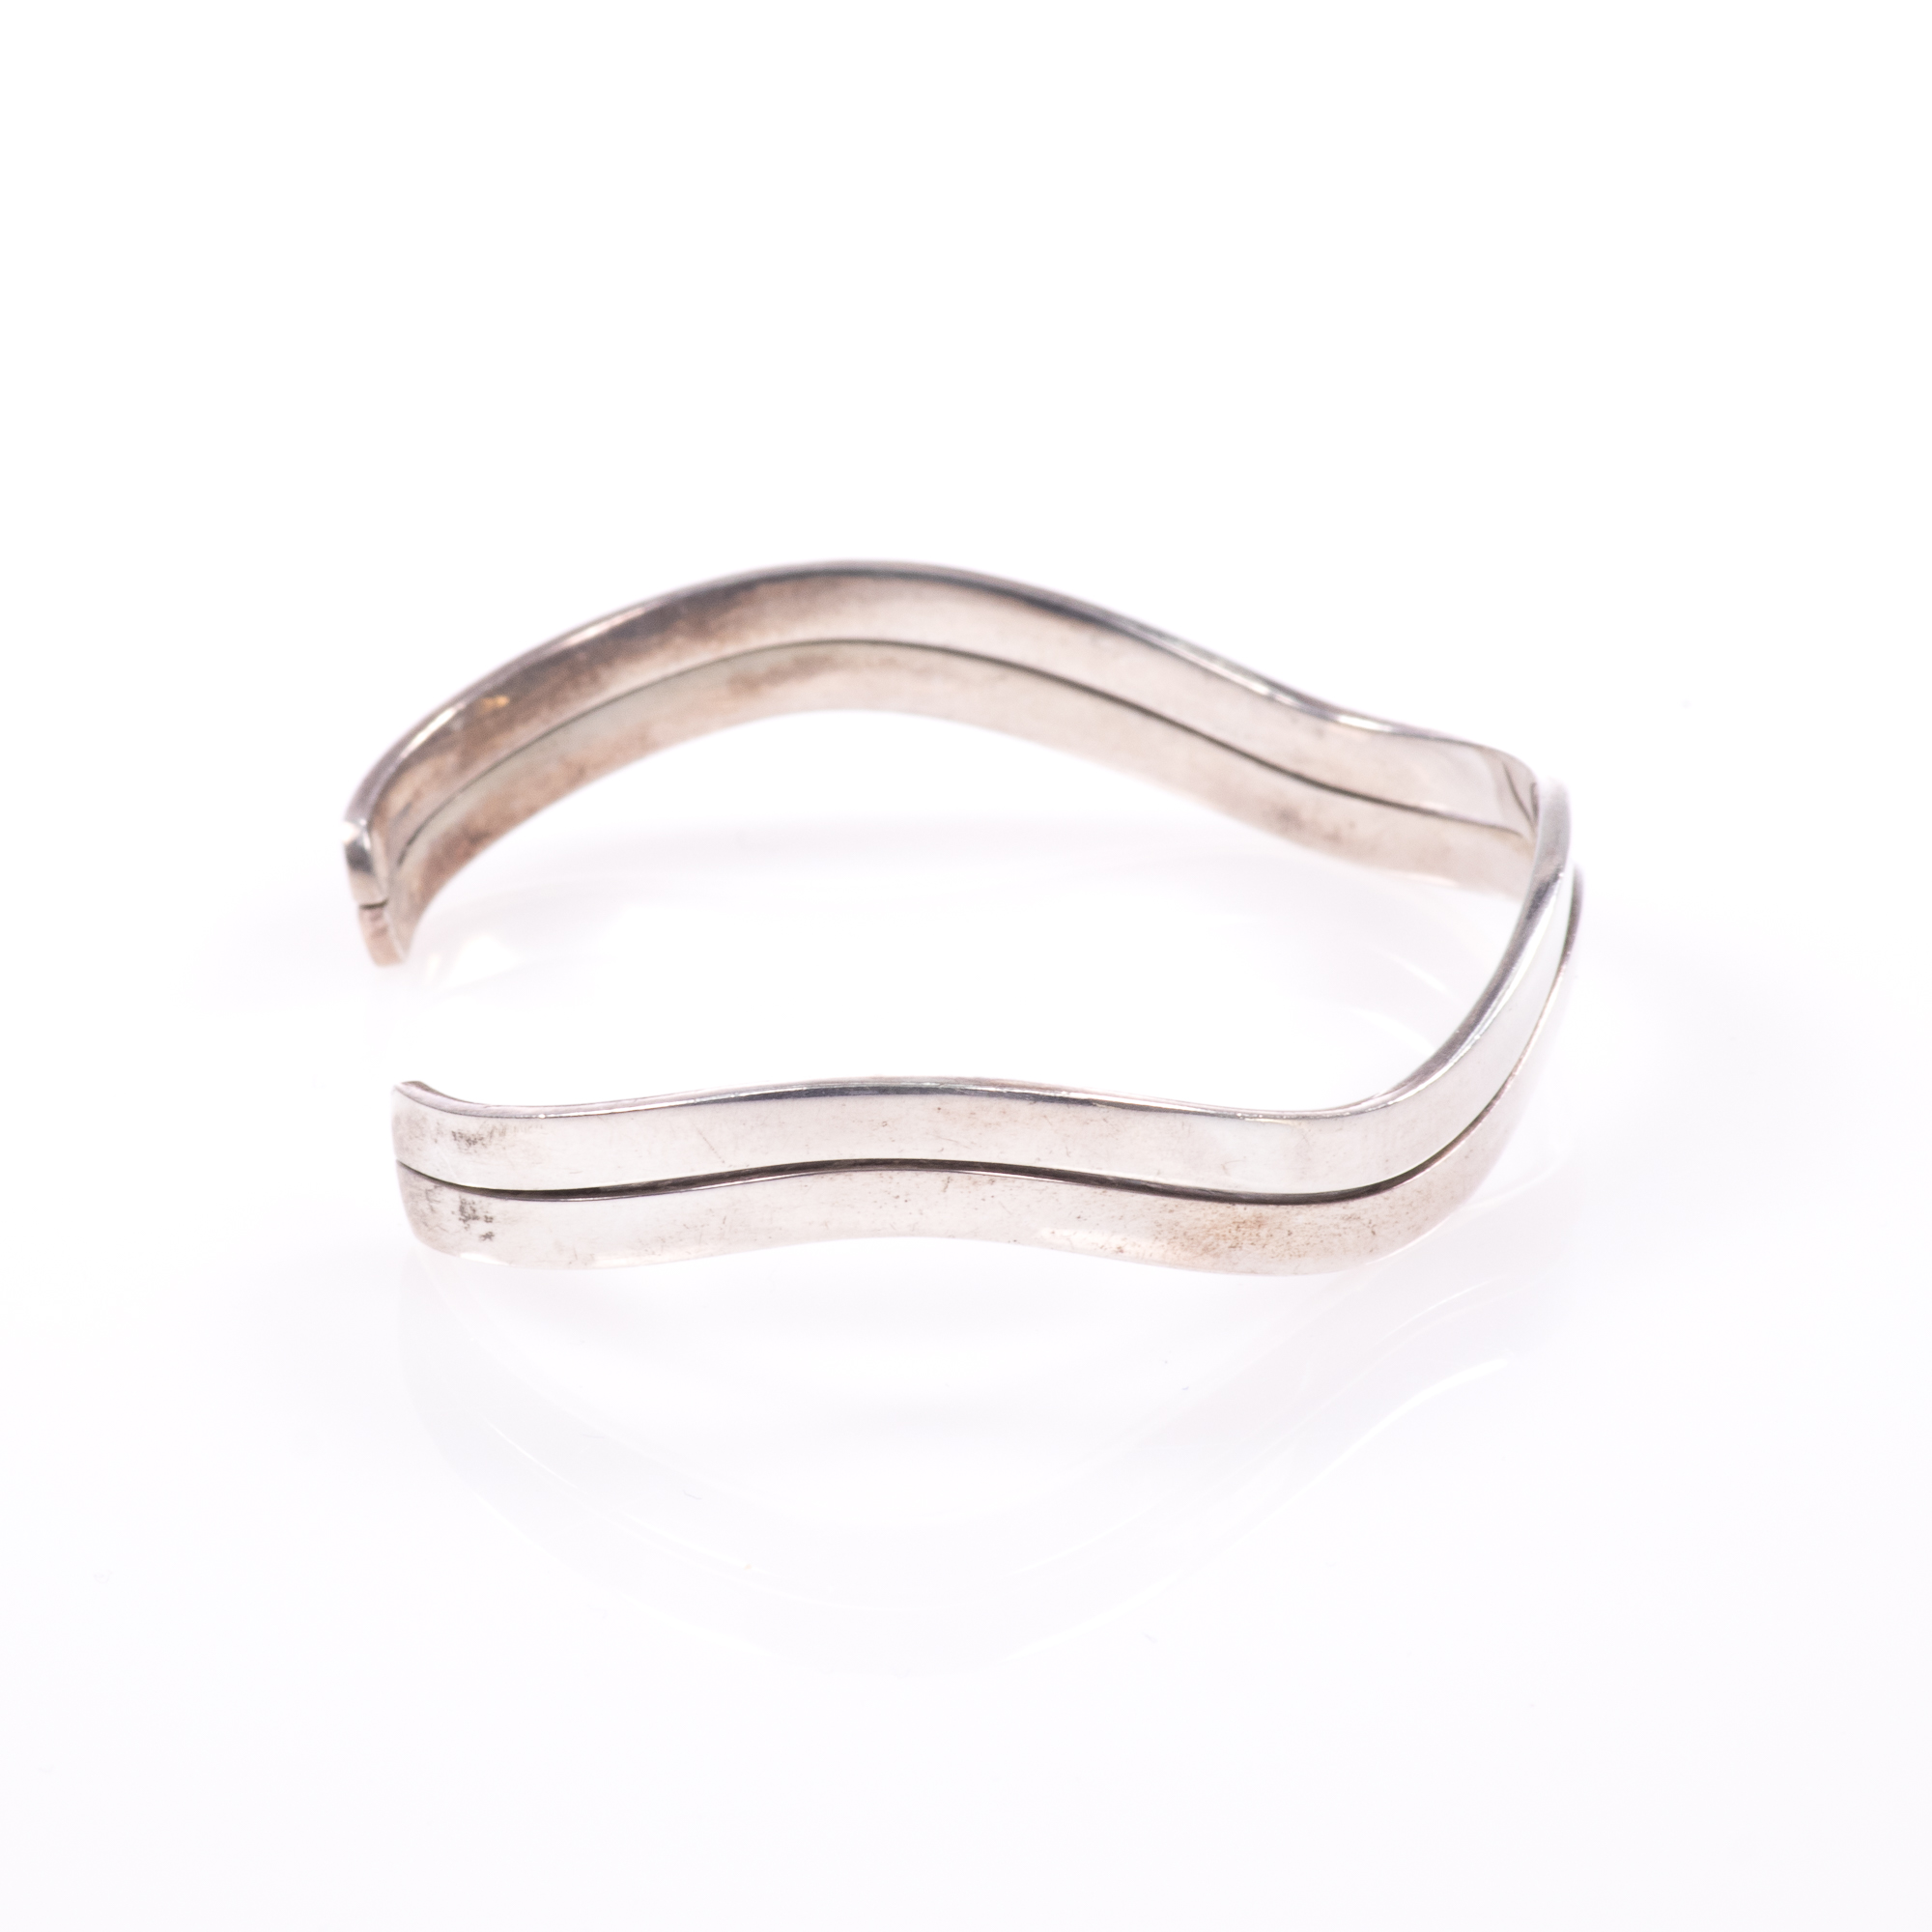 Silver Modernist Bangle Bracelet - Image 5 of 7